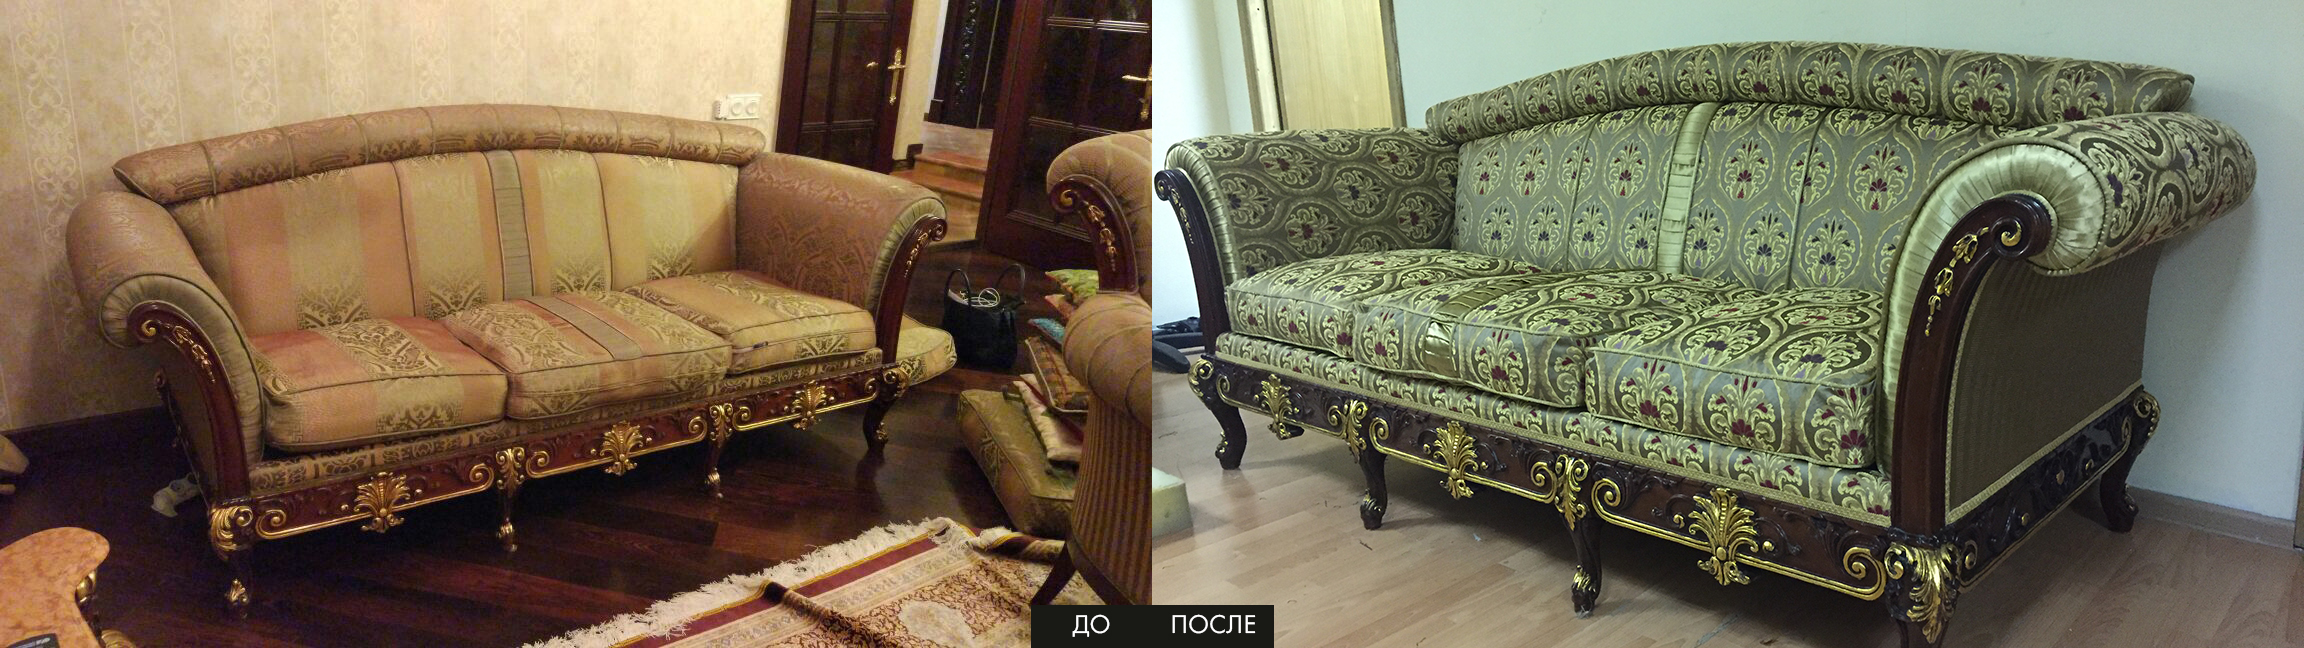 Реставрация мебели г королев